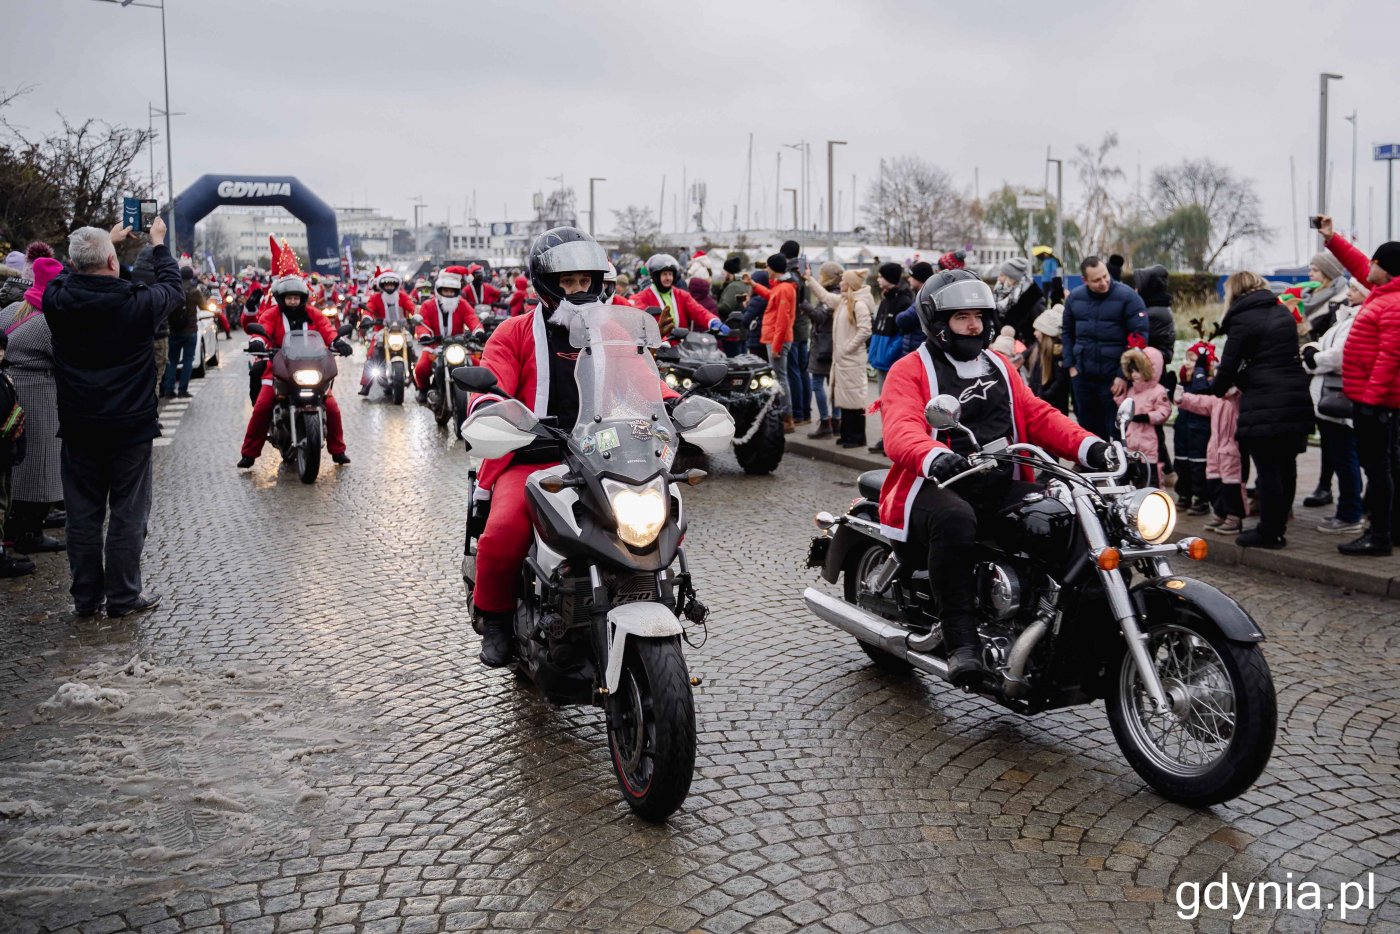 Ryk motocyklowych silników i czerwień świątecznych strojów Mikołajów - tak wyglądała niedzielna, już 20. parada „Mikołaje na motocyklach”, która wystartowała w Gdyni, fot. Kamil Złoch